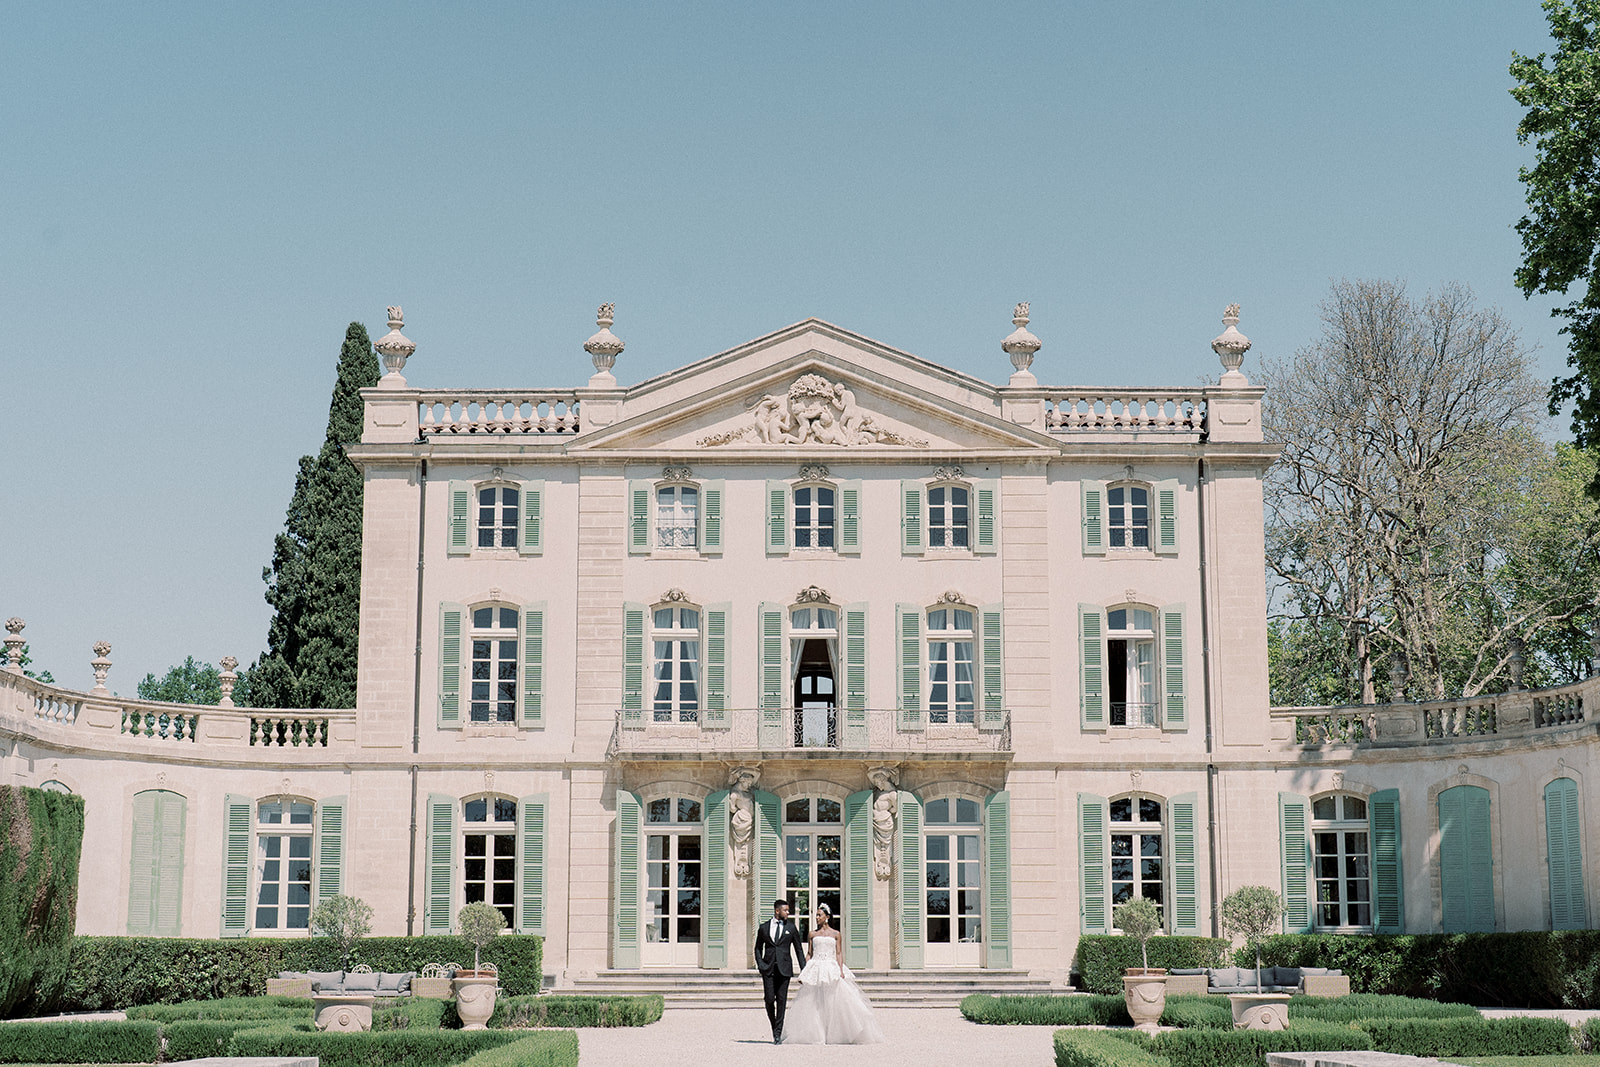 Destination wedding at French Chateau de Tourreau 